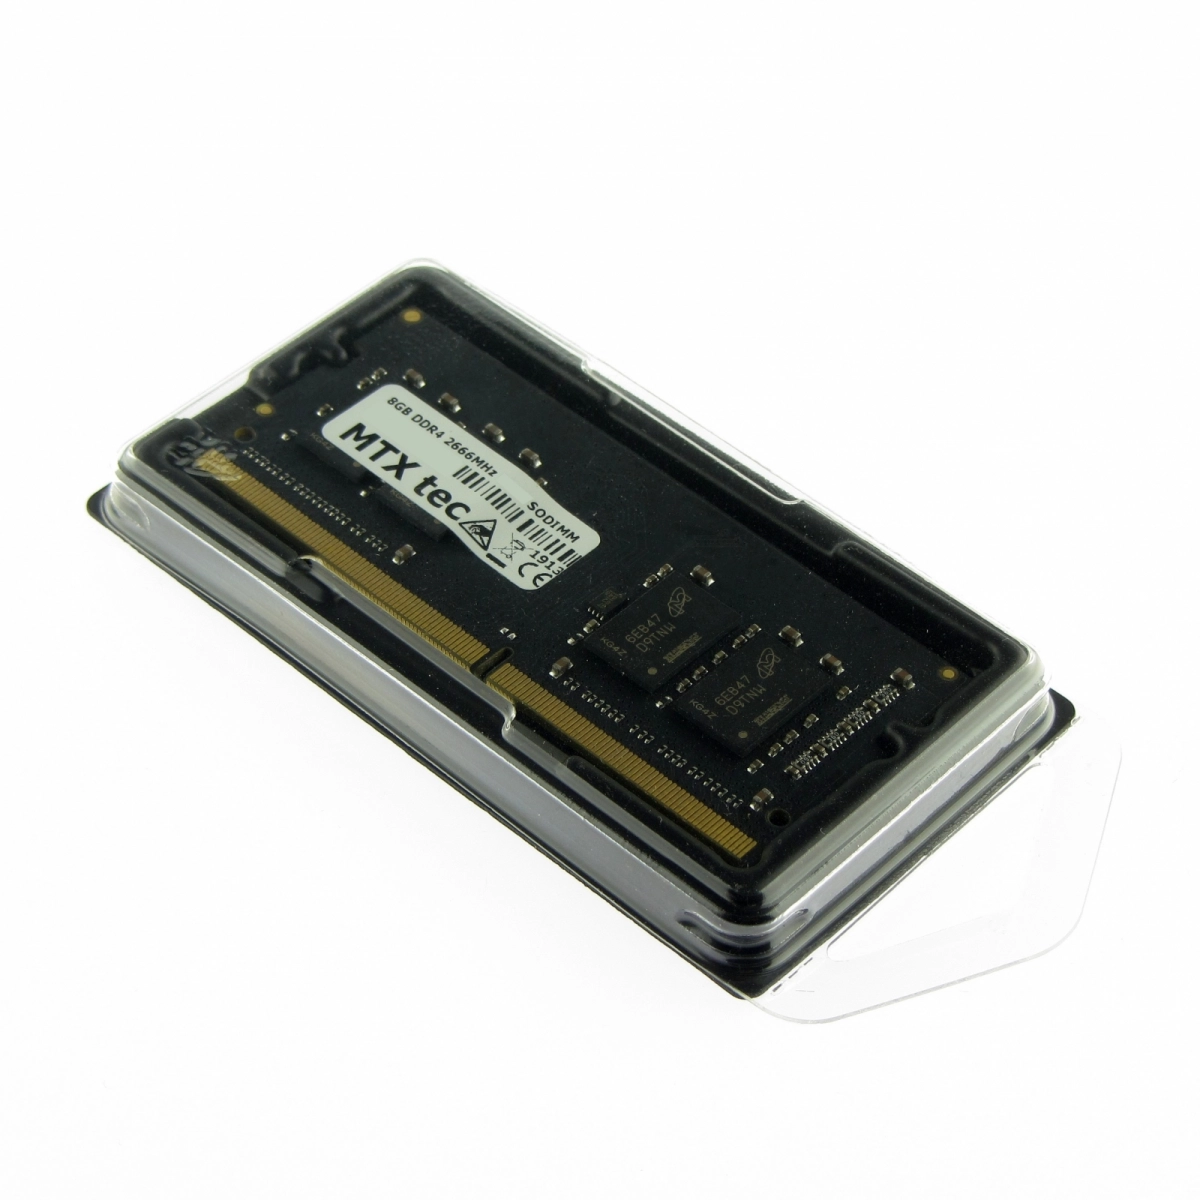 MTXtec Arbeitsspeicher 8 GB RAM für ACER Aspire 5 A515-51G